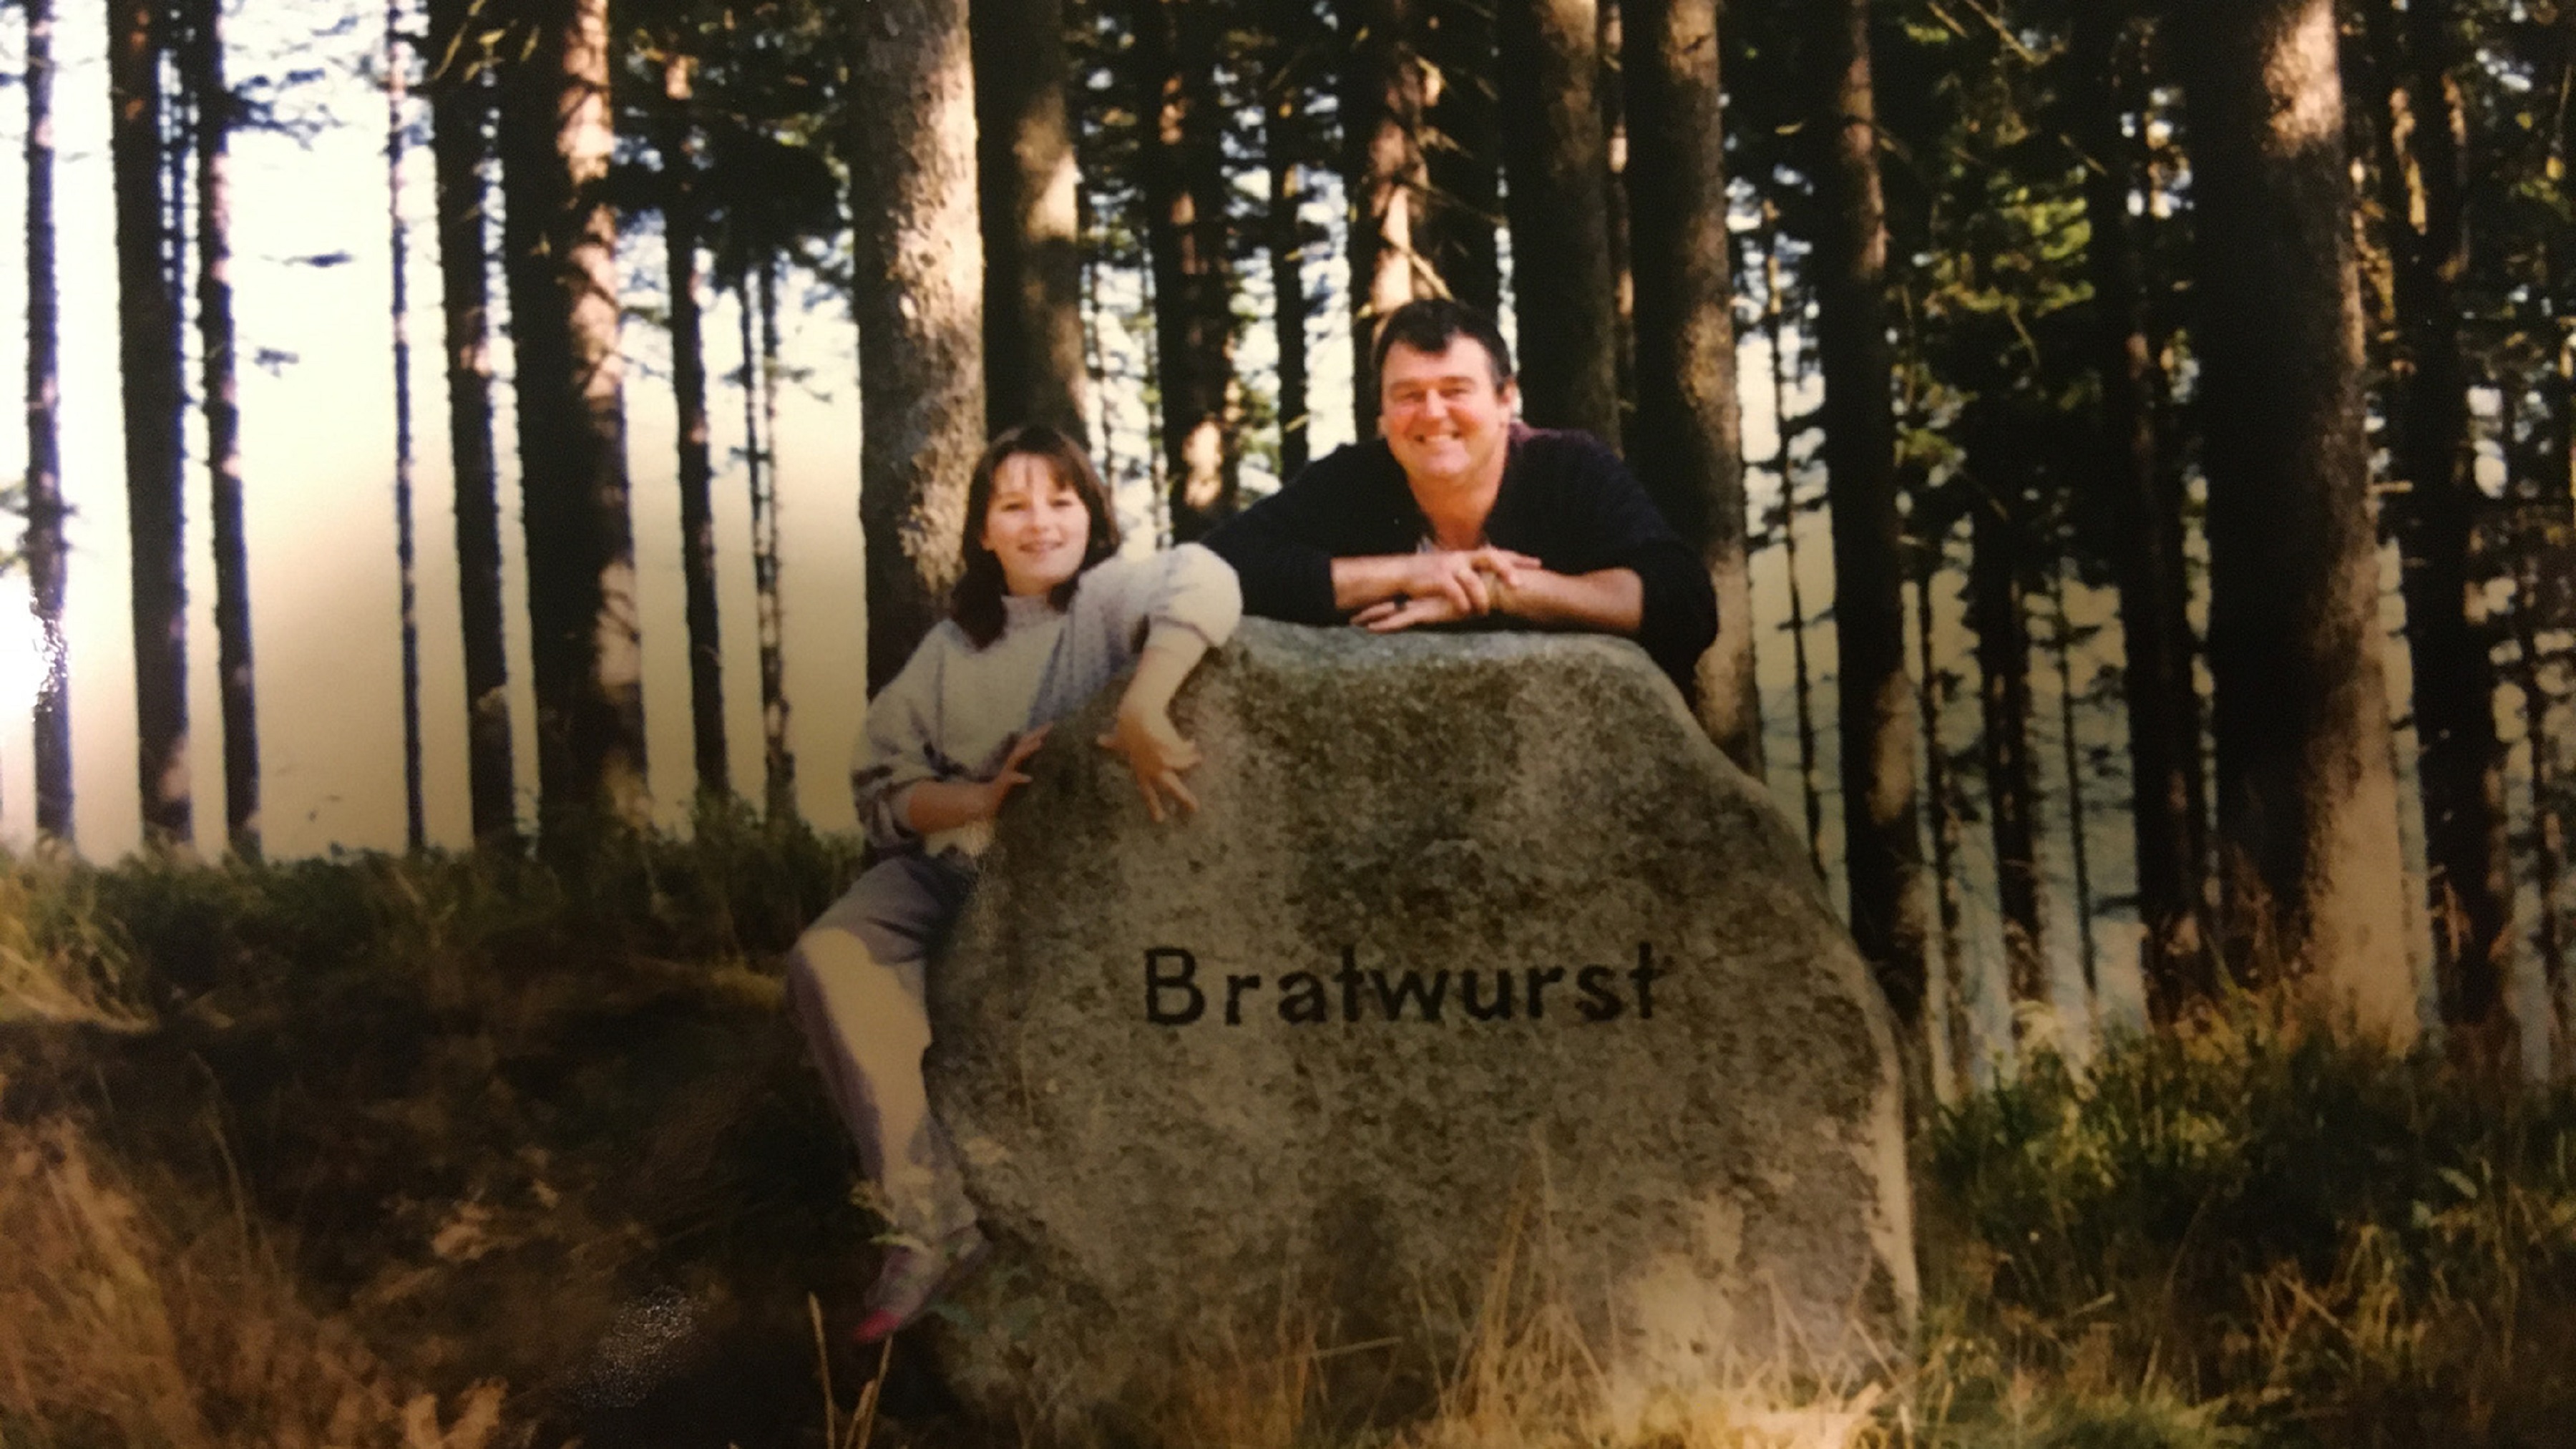 Eine Frau und ein Mann stehen hinter einem großen Stein, auf dem "Bratwurst" steht.